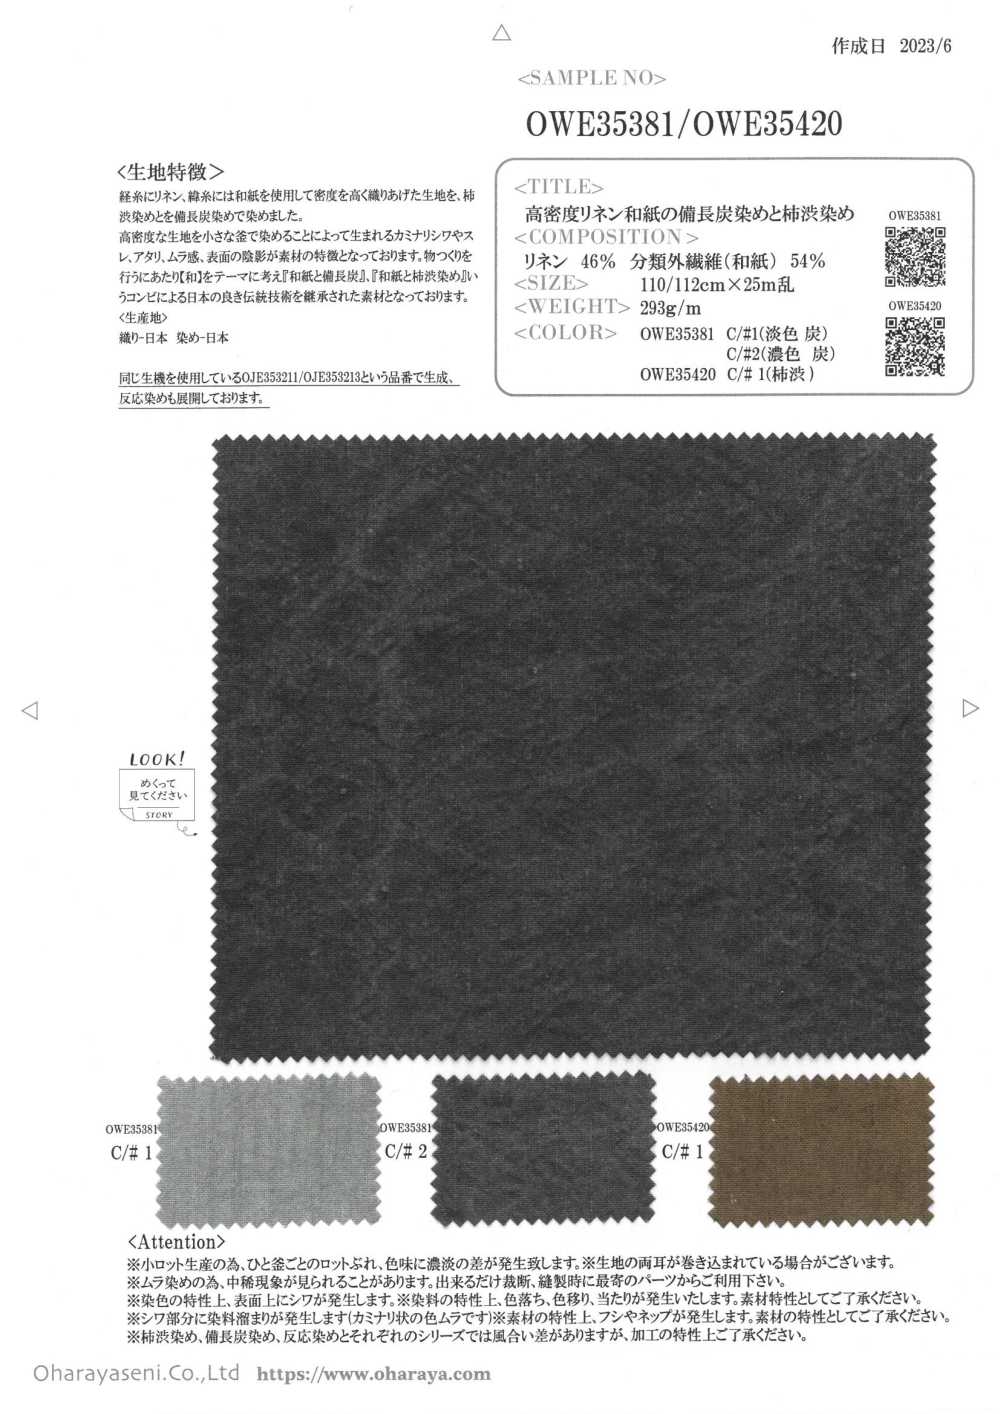 OWE35381 Mit Binchotan-Holzkohle Gefärbtes, Hochdichtes Leinen-Washi[Textilgewebe] Oharayaseni